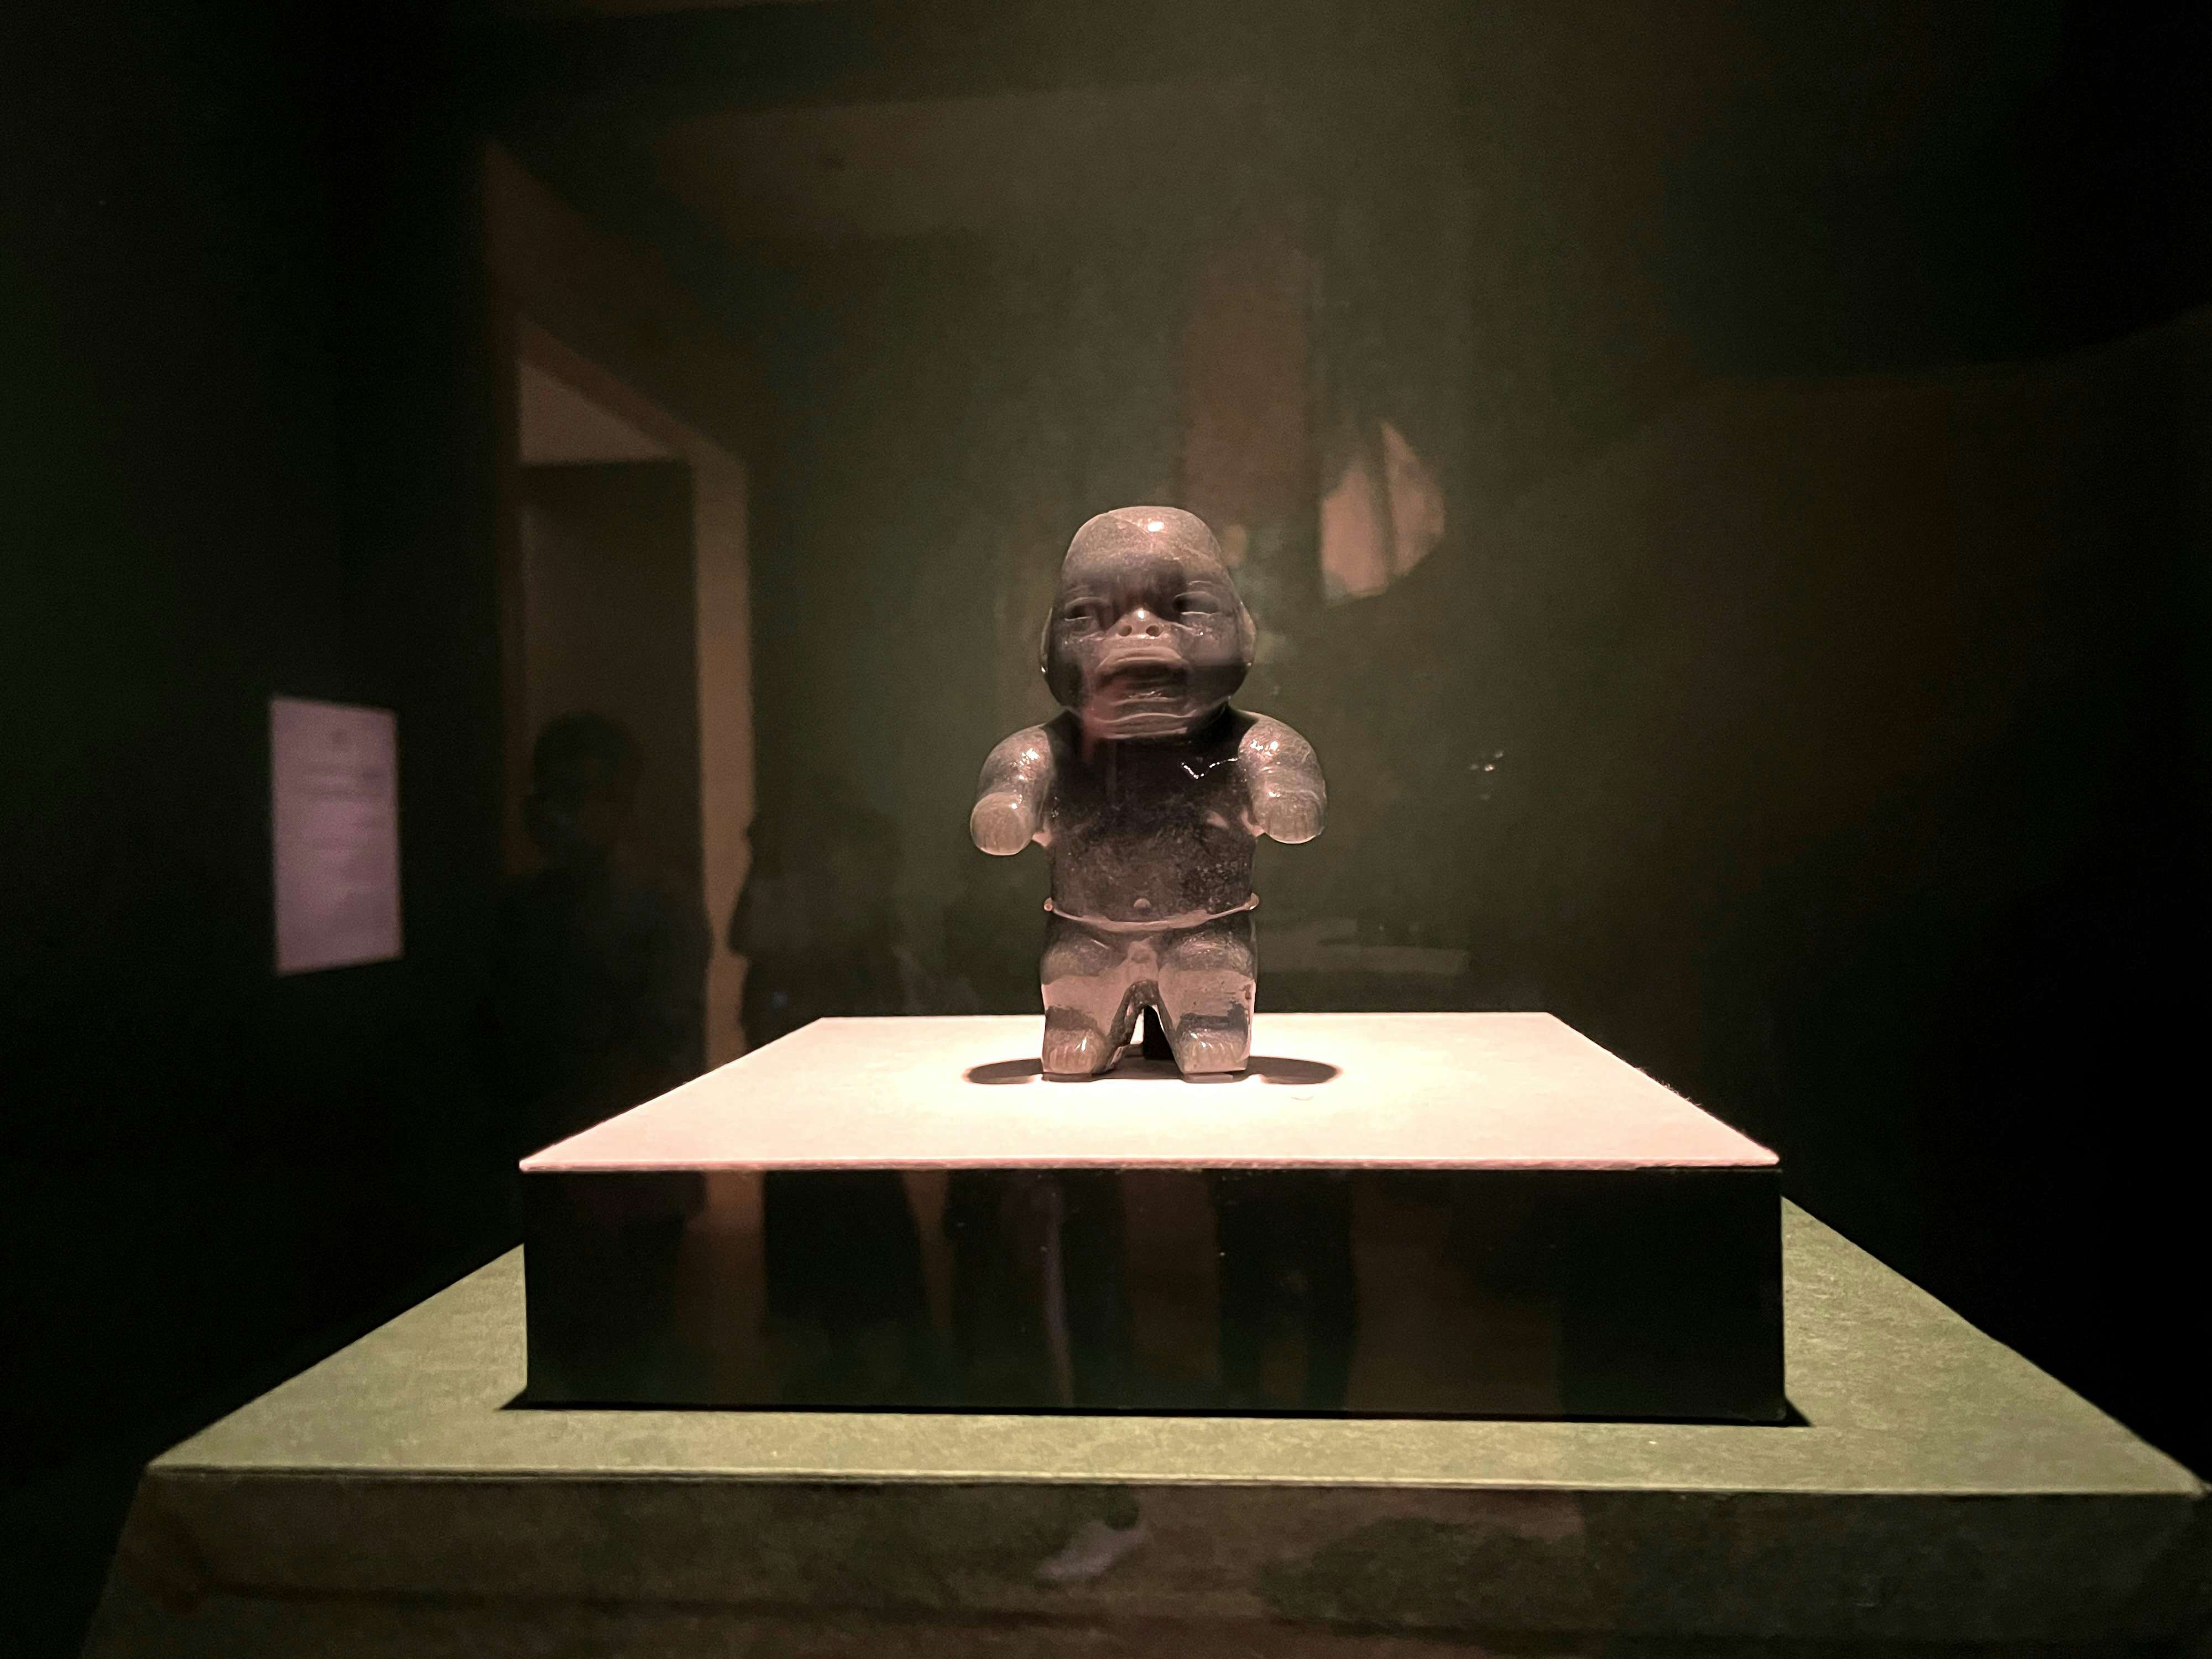 マヤ、アステカ、テオティワカン。古代メキシコが残した文明の遺産と謎